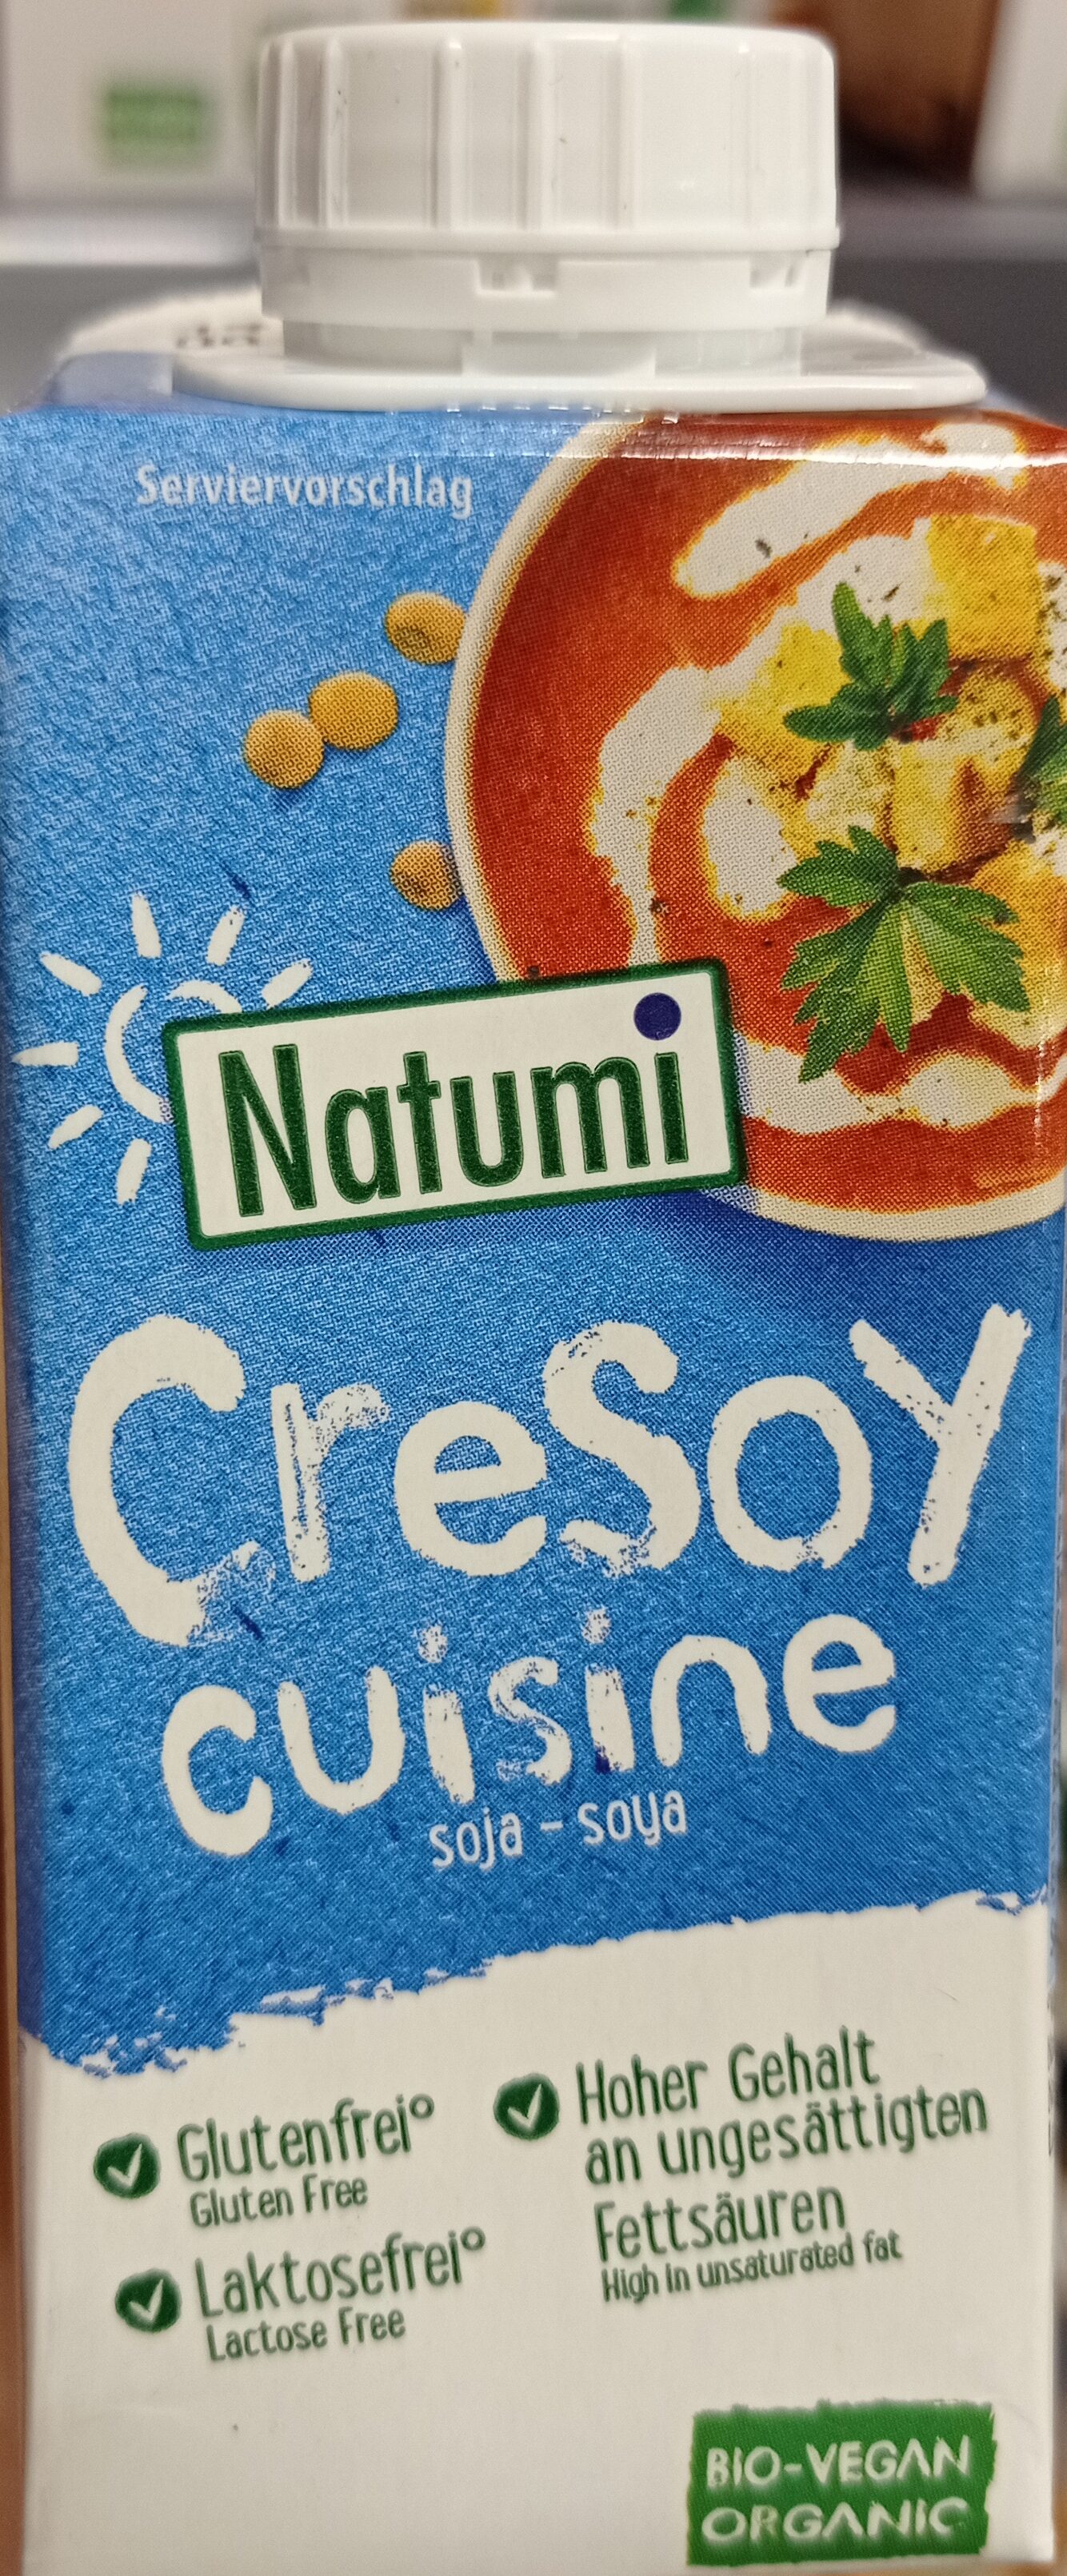 Cresoy soya - Produkt